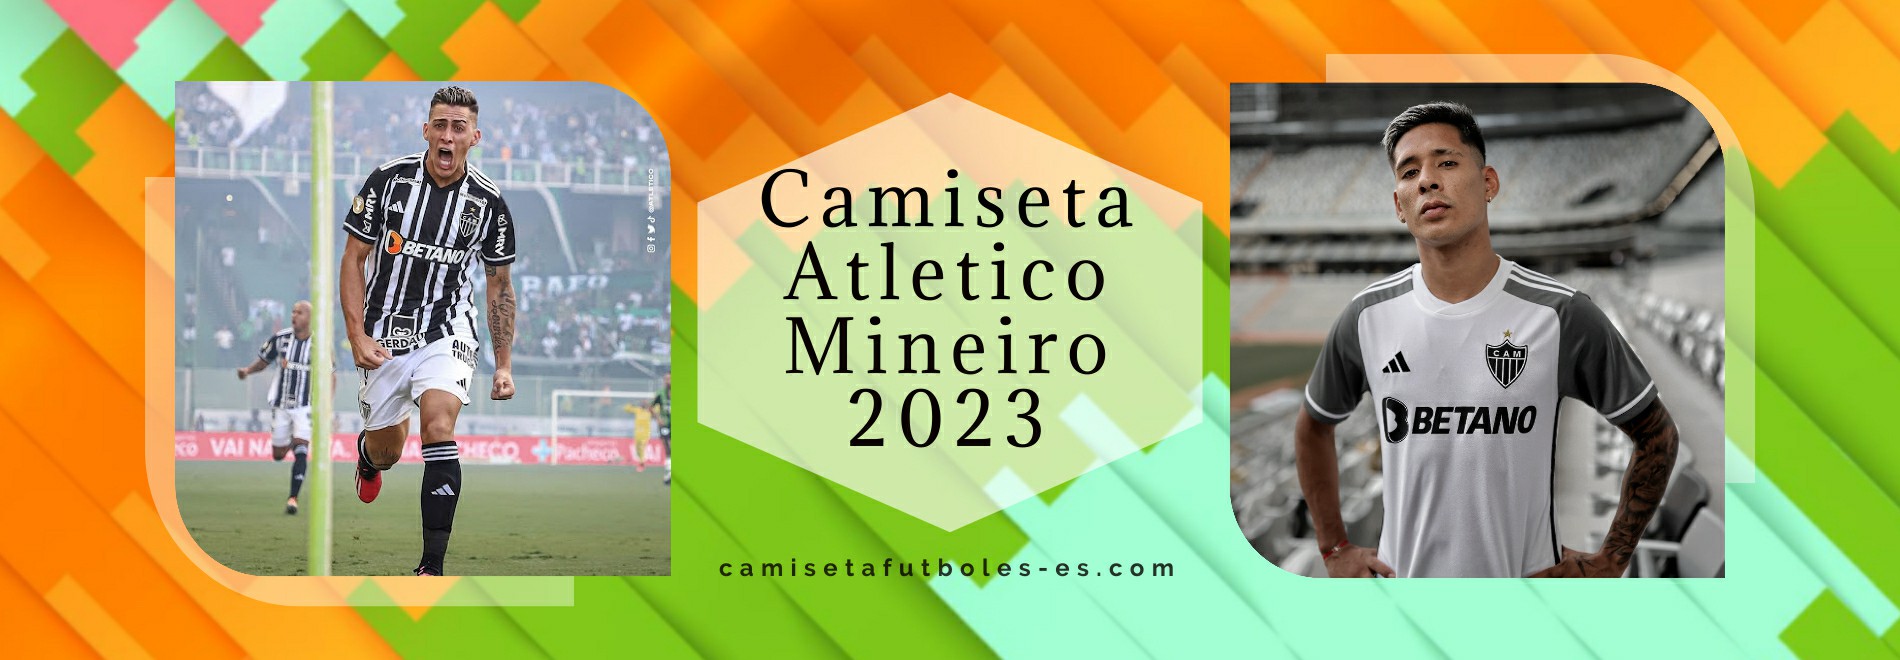 Camiseta Atletico Mineiro 2023-2024